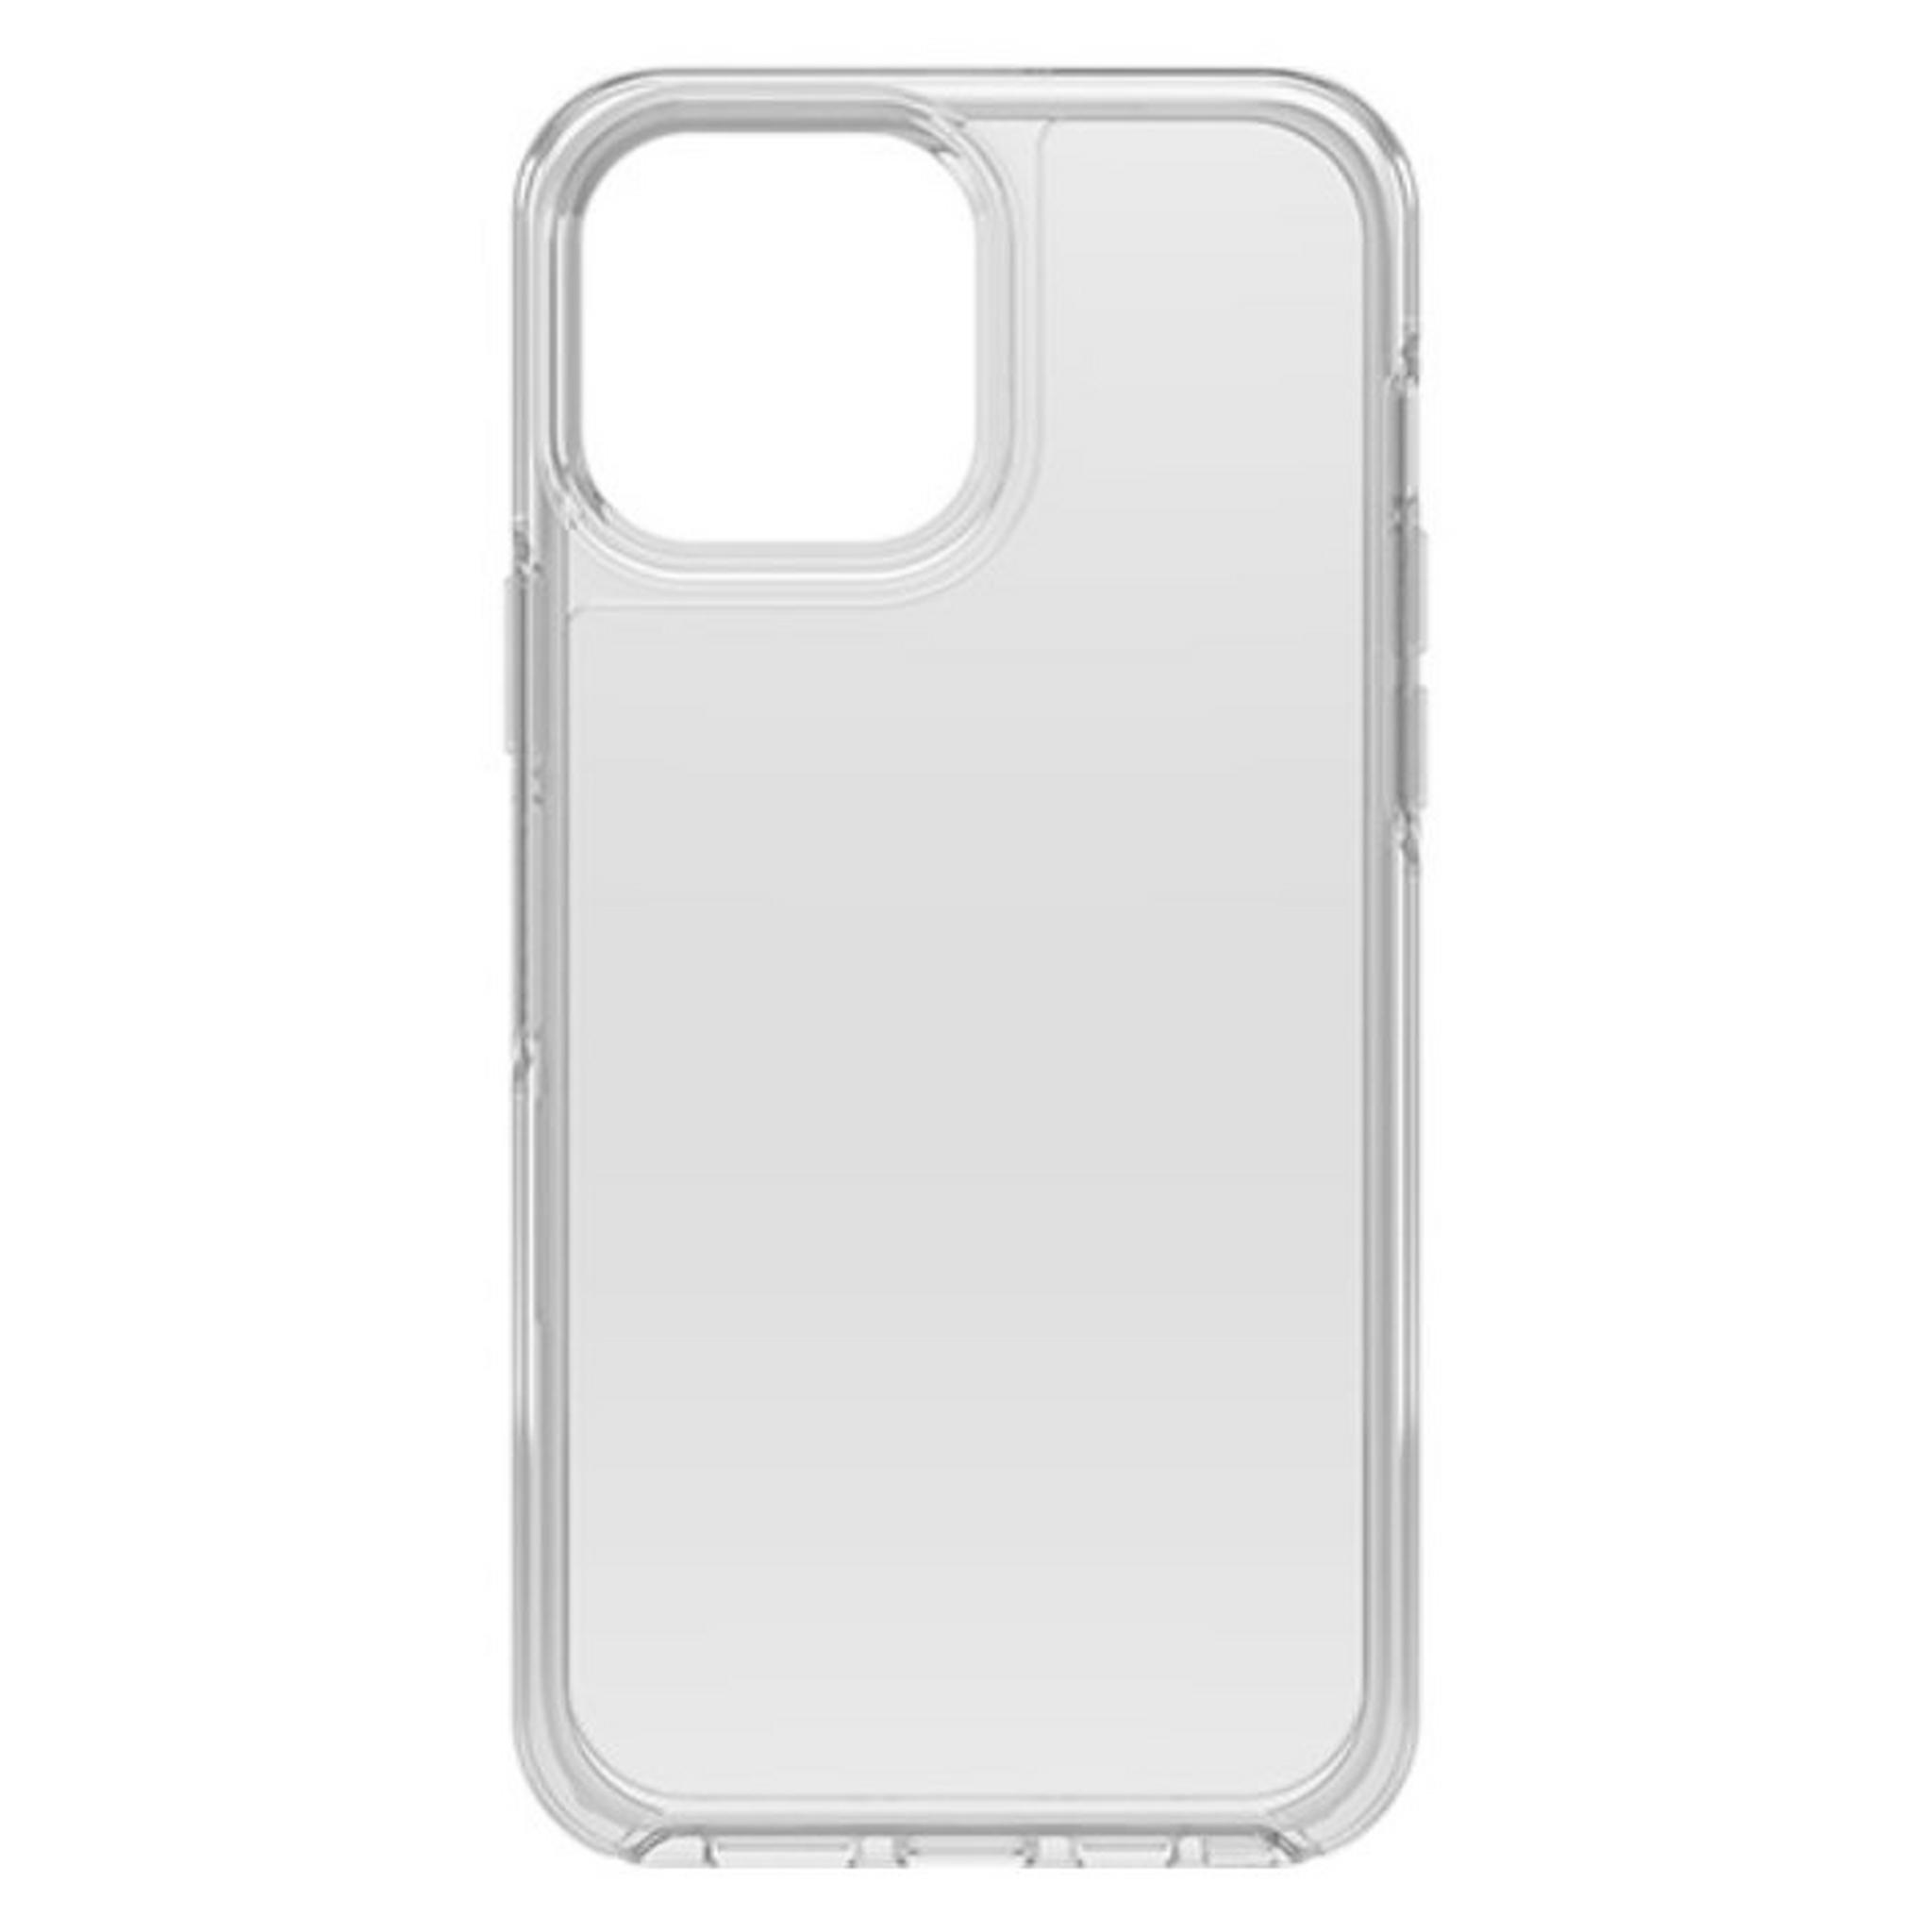 غطاء حماية سلسلة سميتري لهاتف ايفون 13 من اوتر بوكس - شفاف